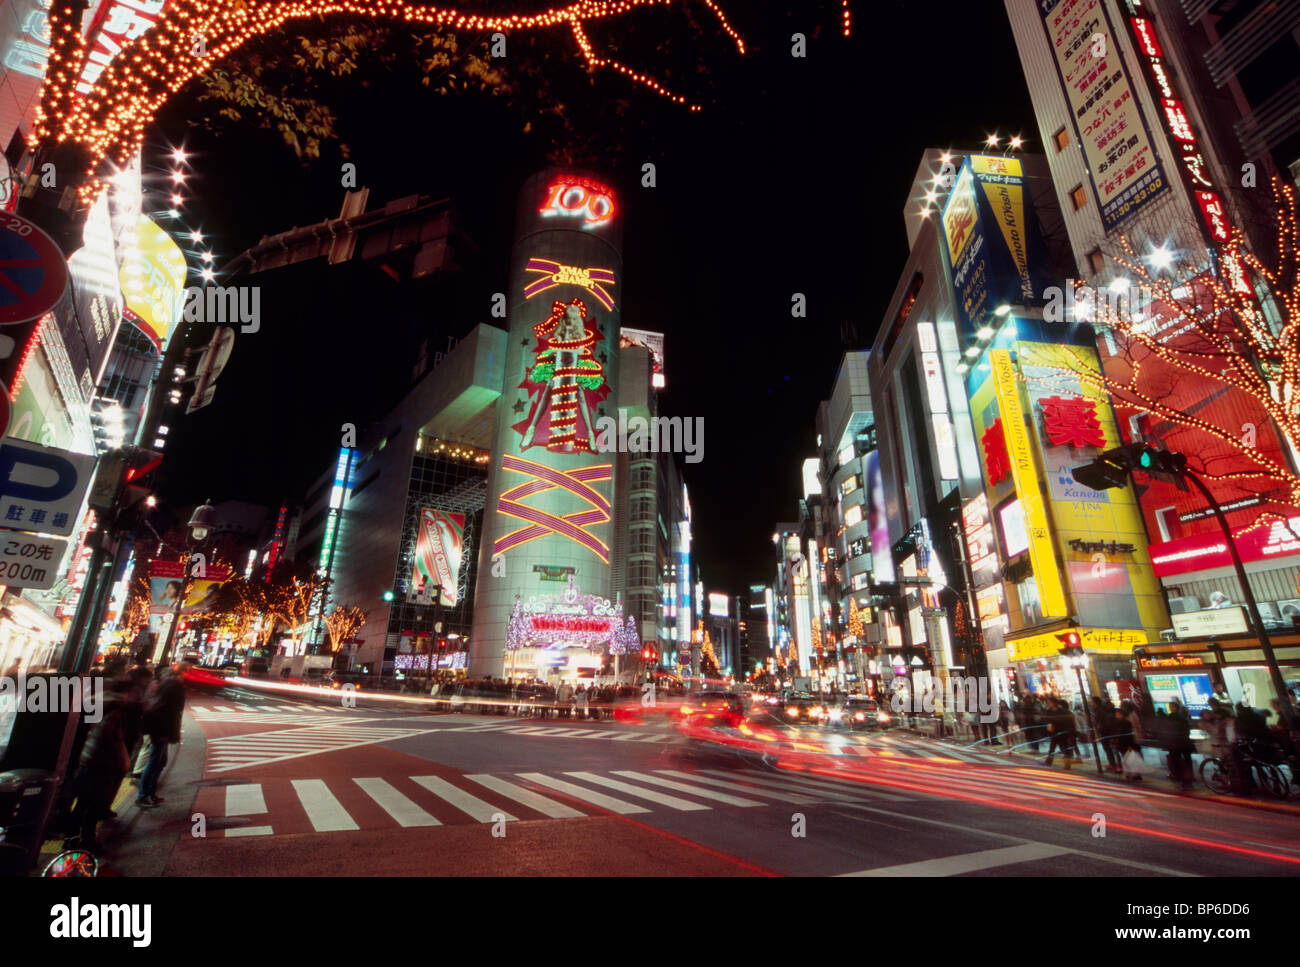 Illuminated Dogenzaka, Shibuya, Tokyo, Japan Stock Photo